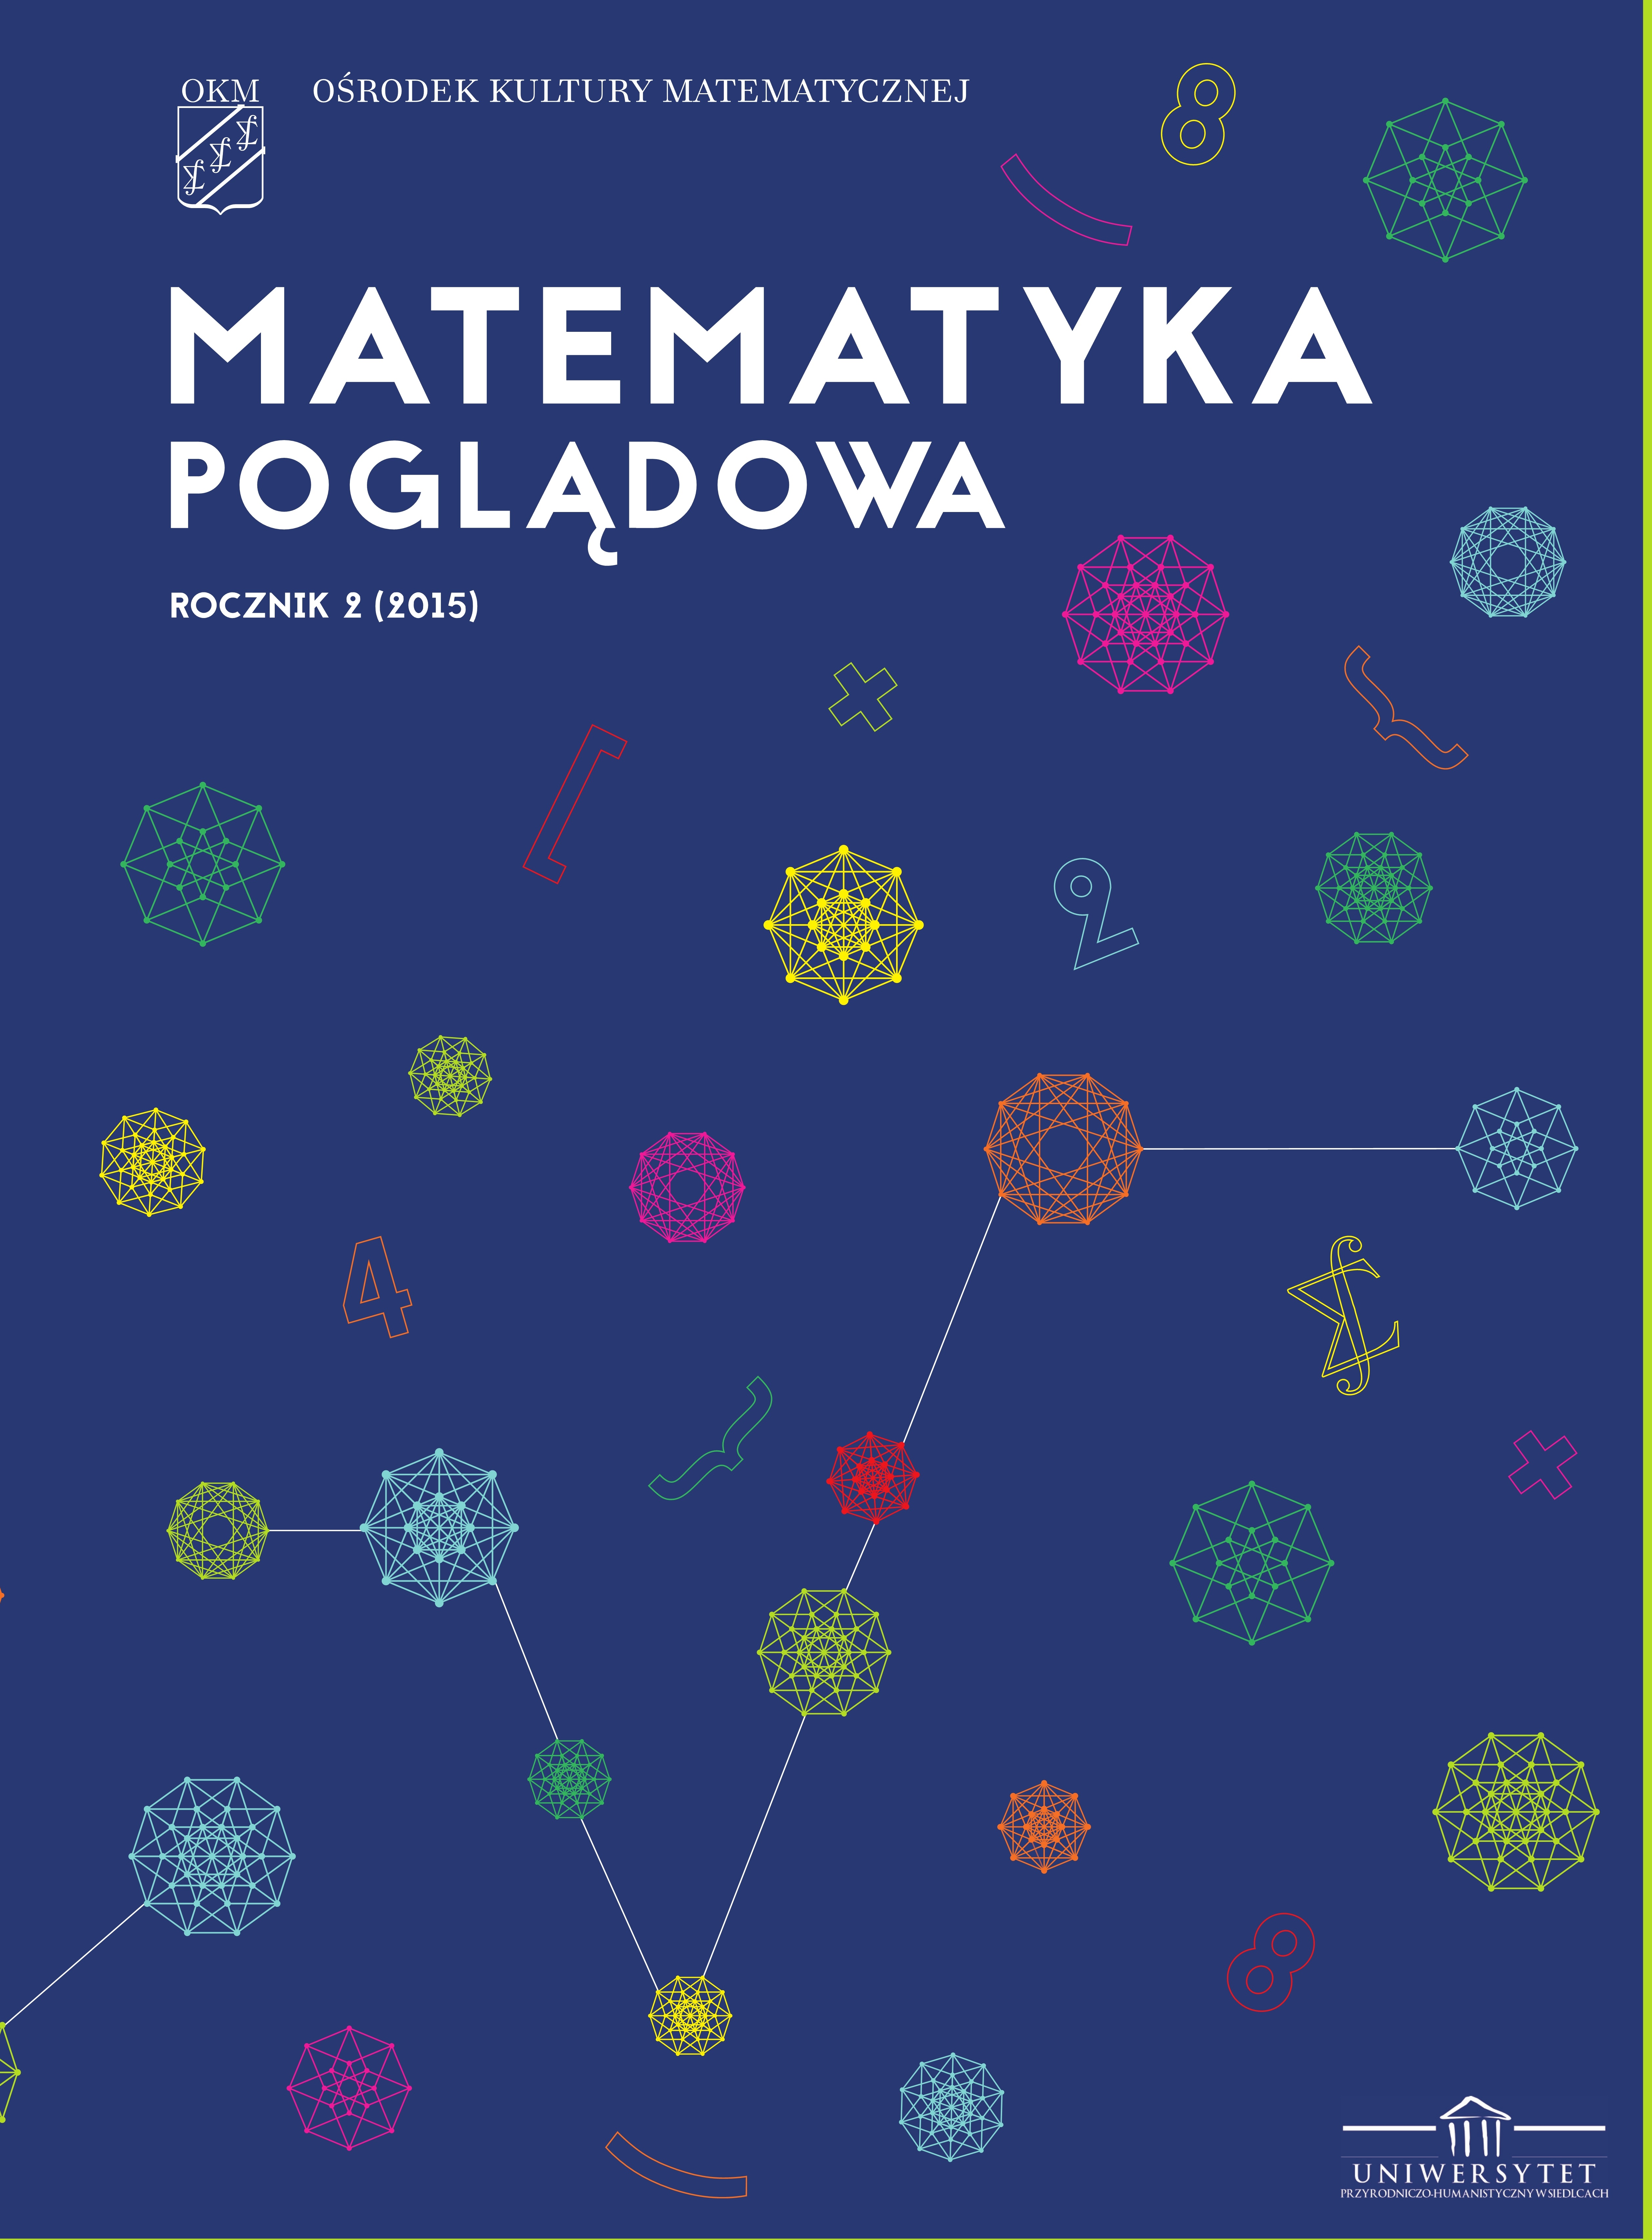 Okładka czasopisma Matematyka Poglądowa 2015